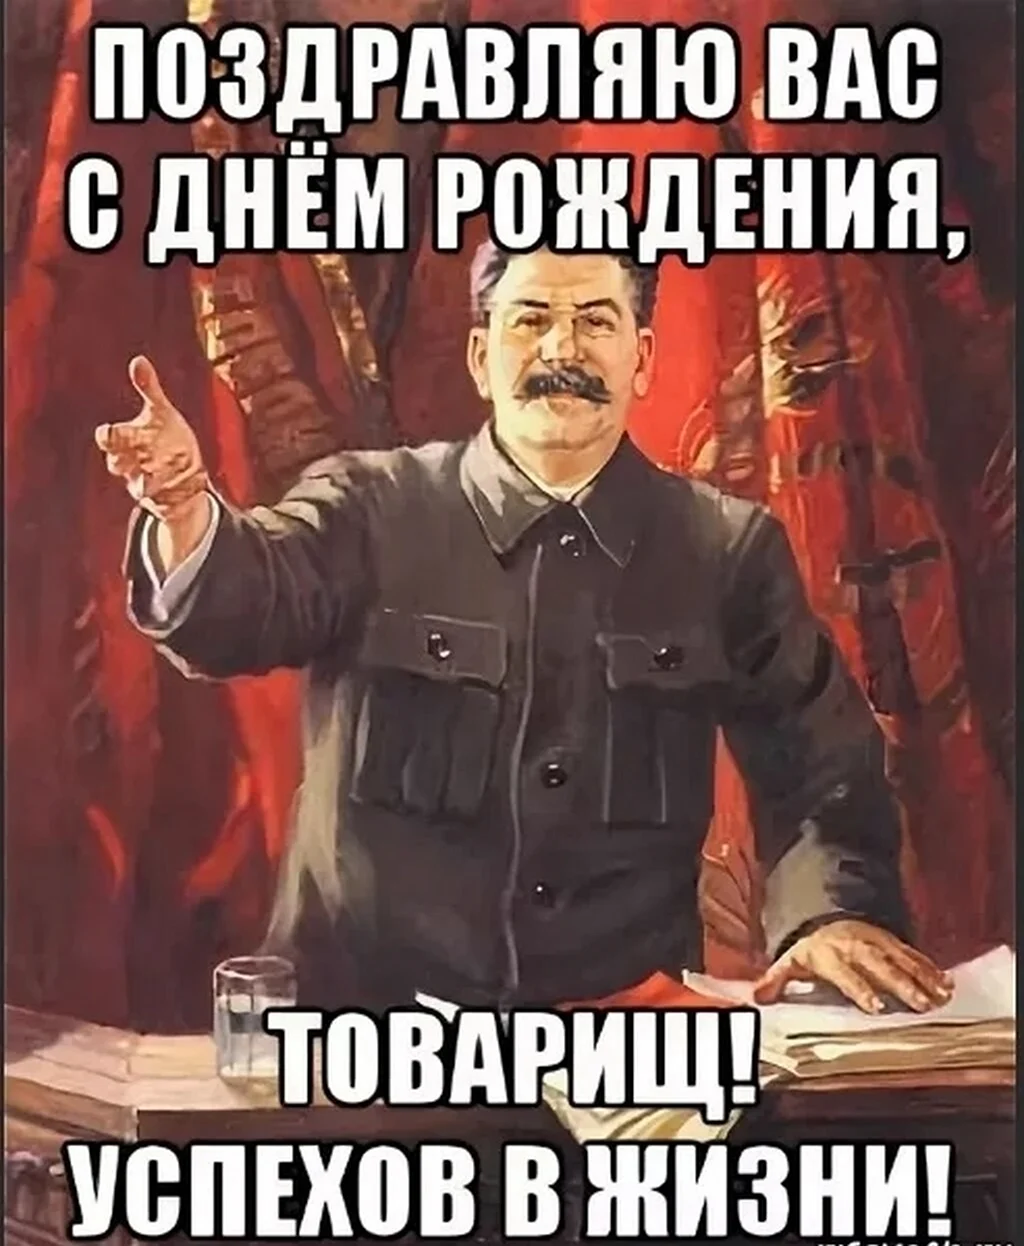 Поздравление с днём рождения от Сталина. Красивая картинка